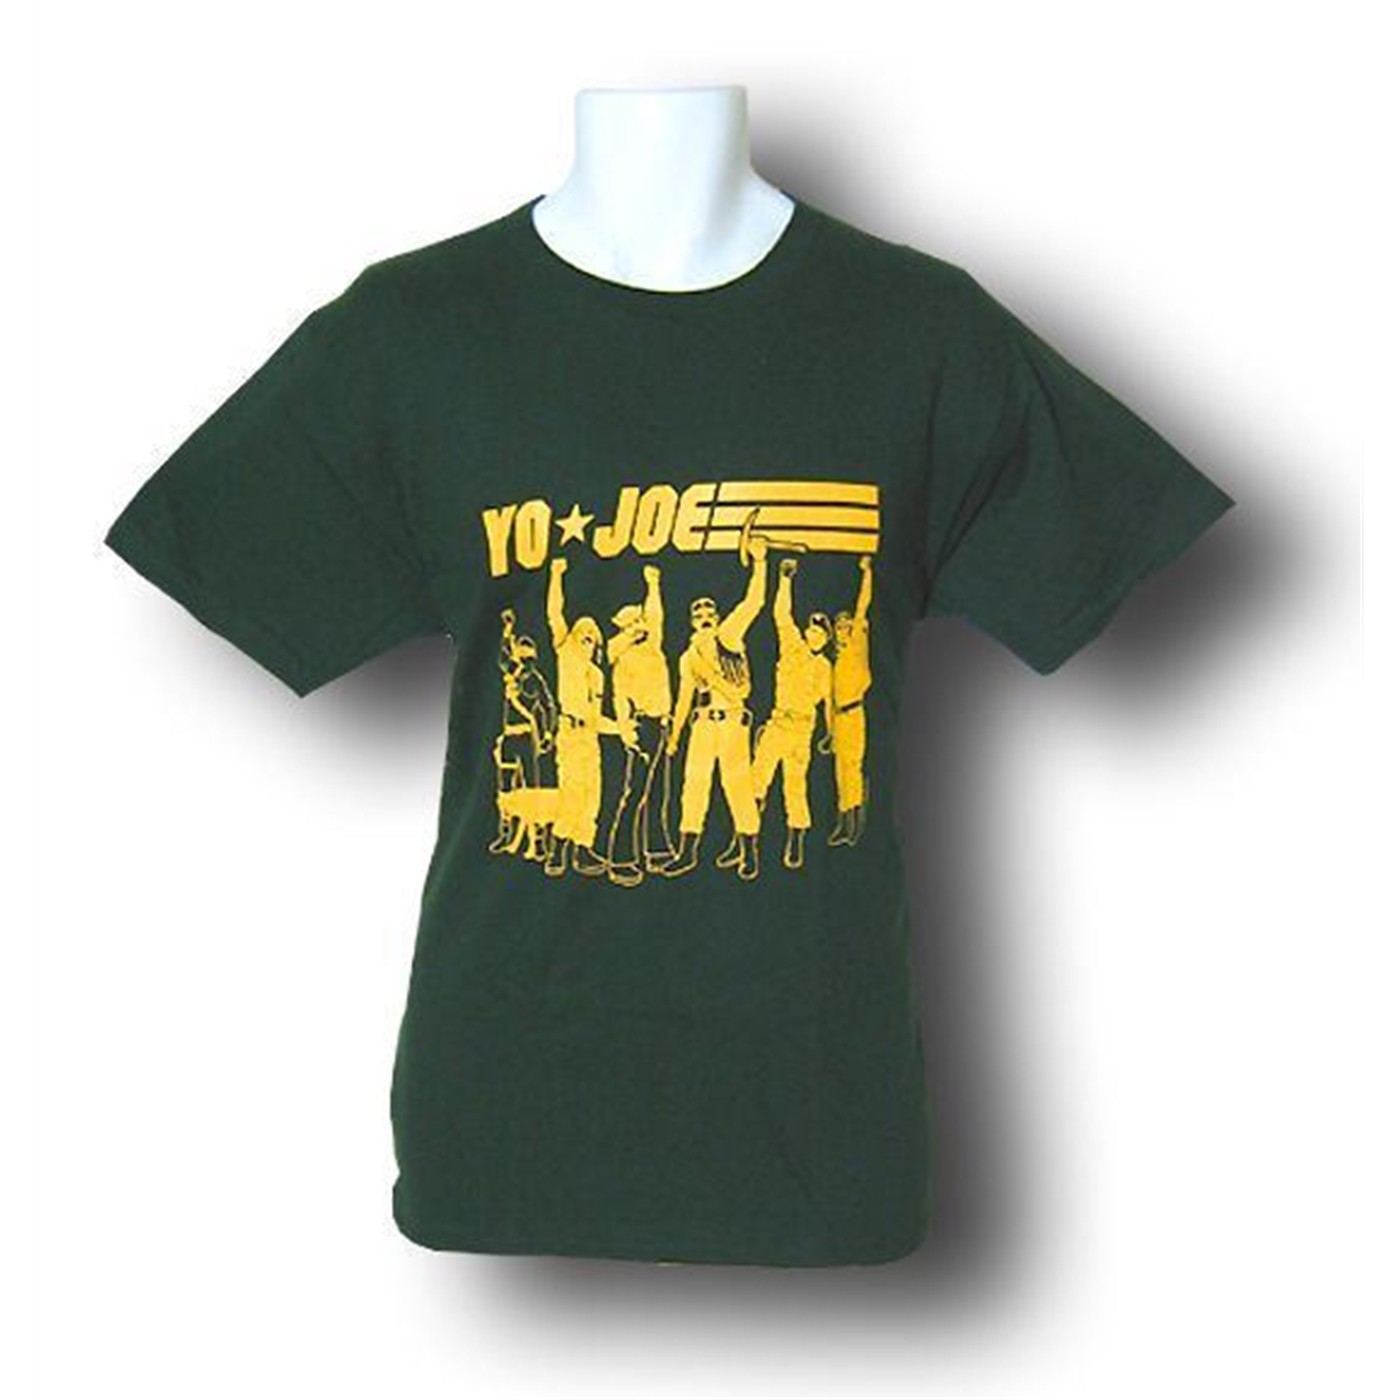 GI Joe Yo Joe! Navy T-Shirt